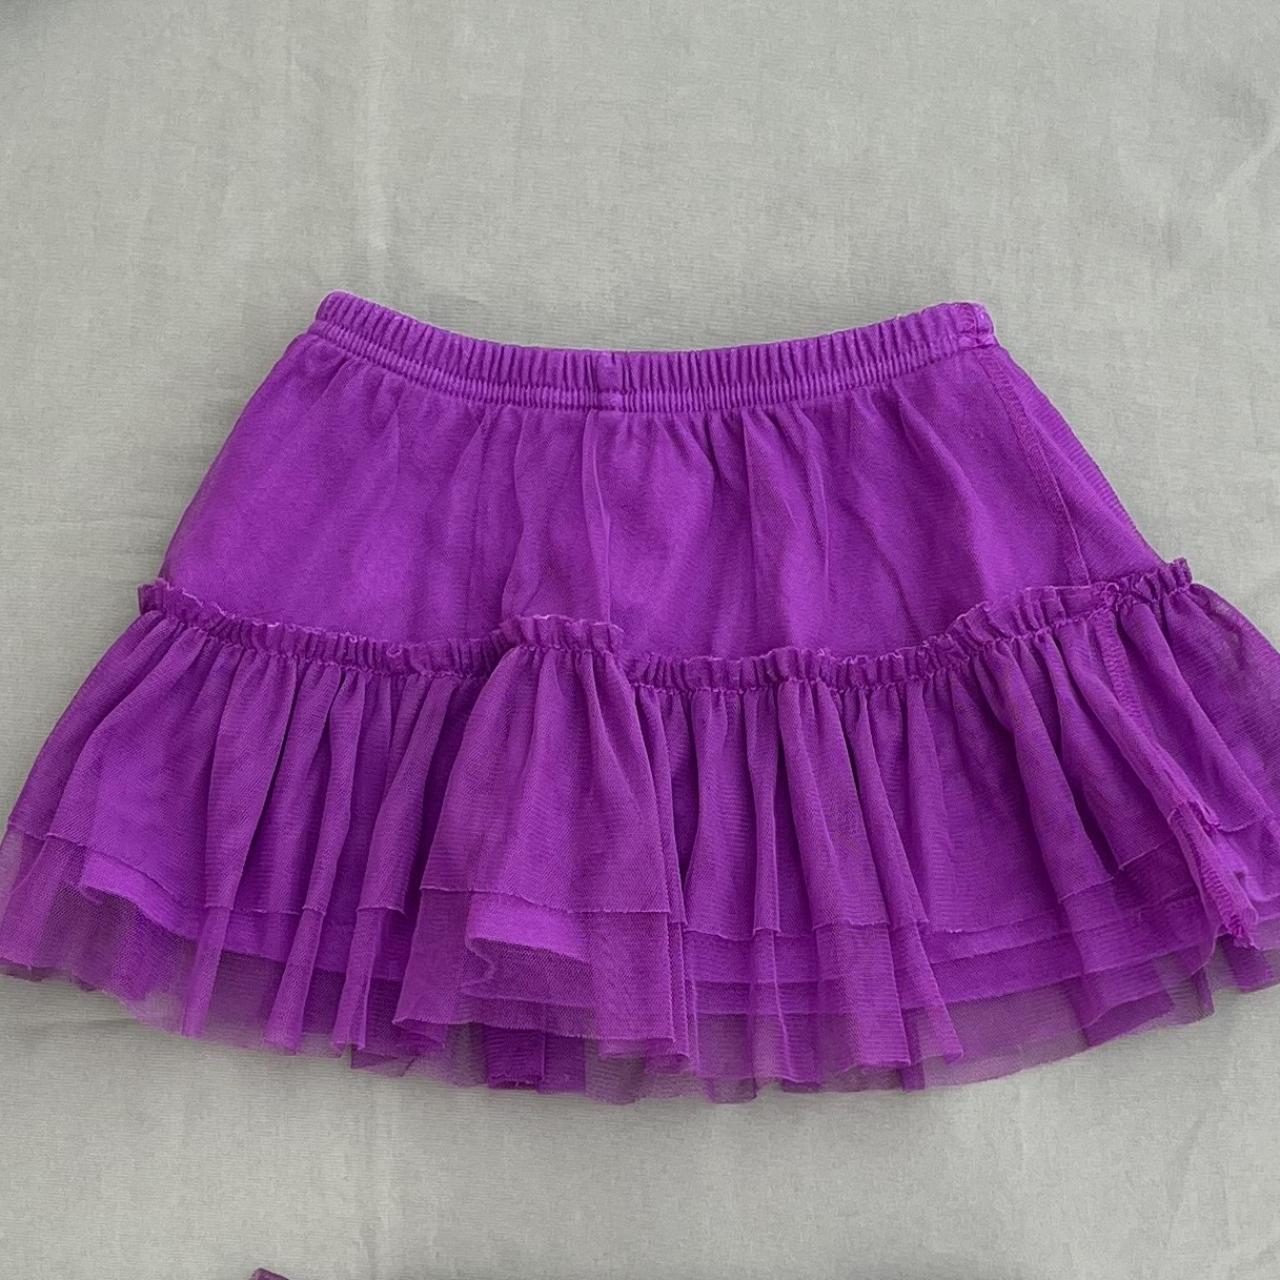 Jumping Beans Purple Skirt | Depop